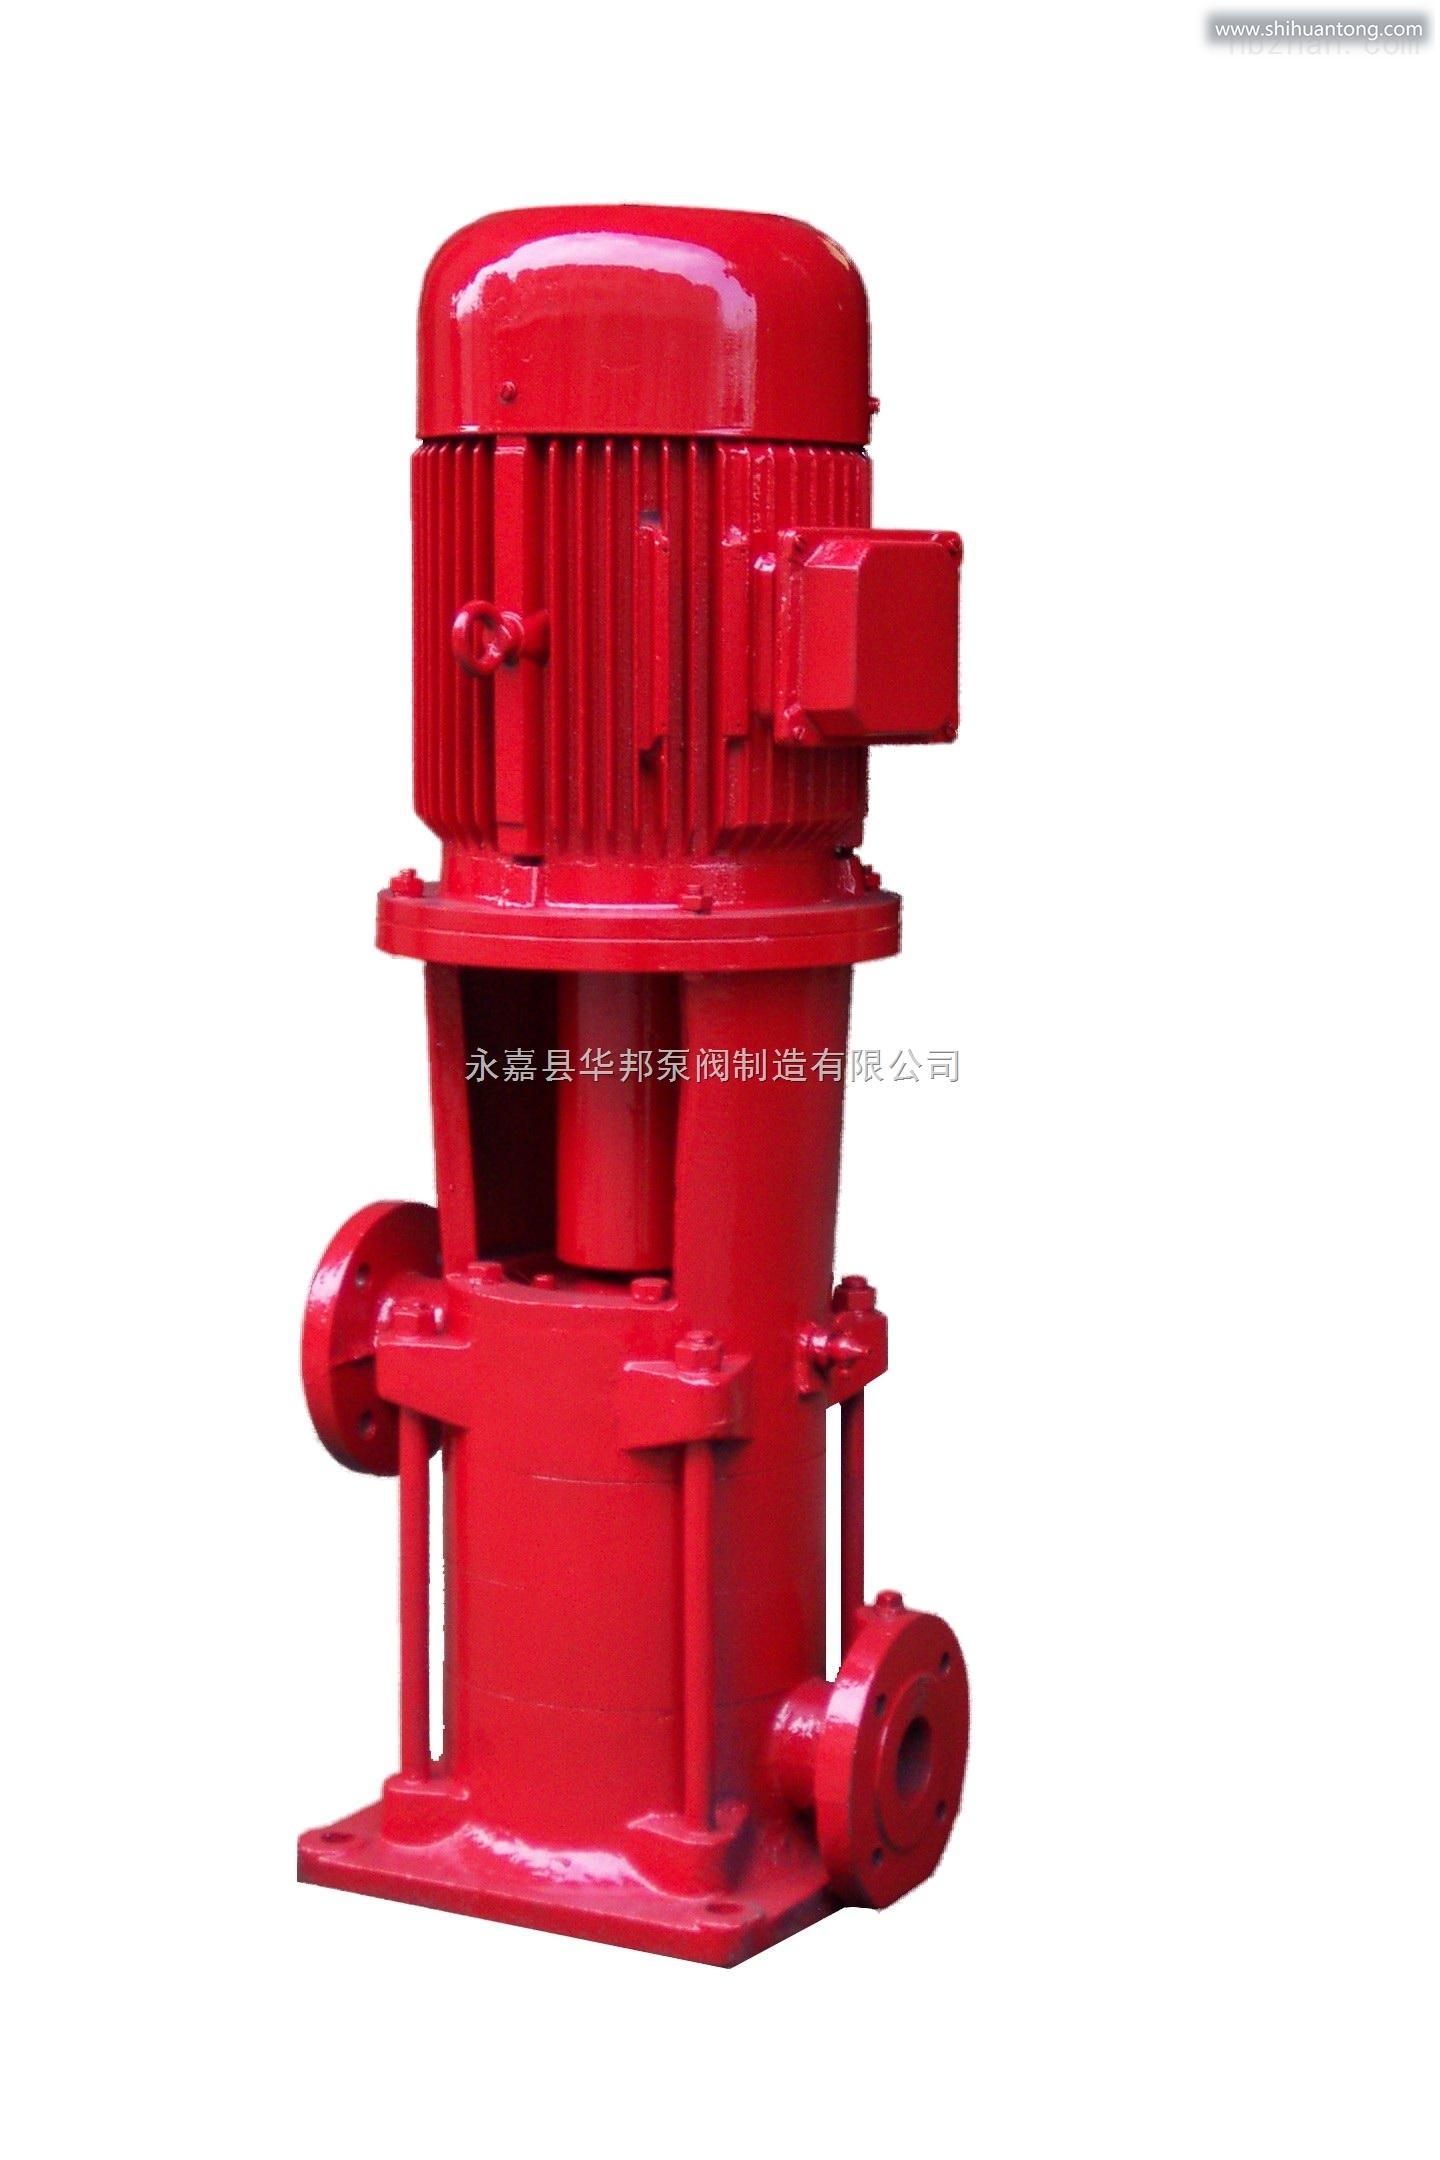 XBD-LG型立式多级消防泵